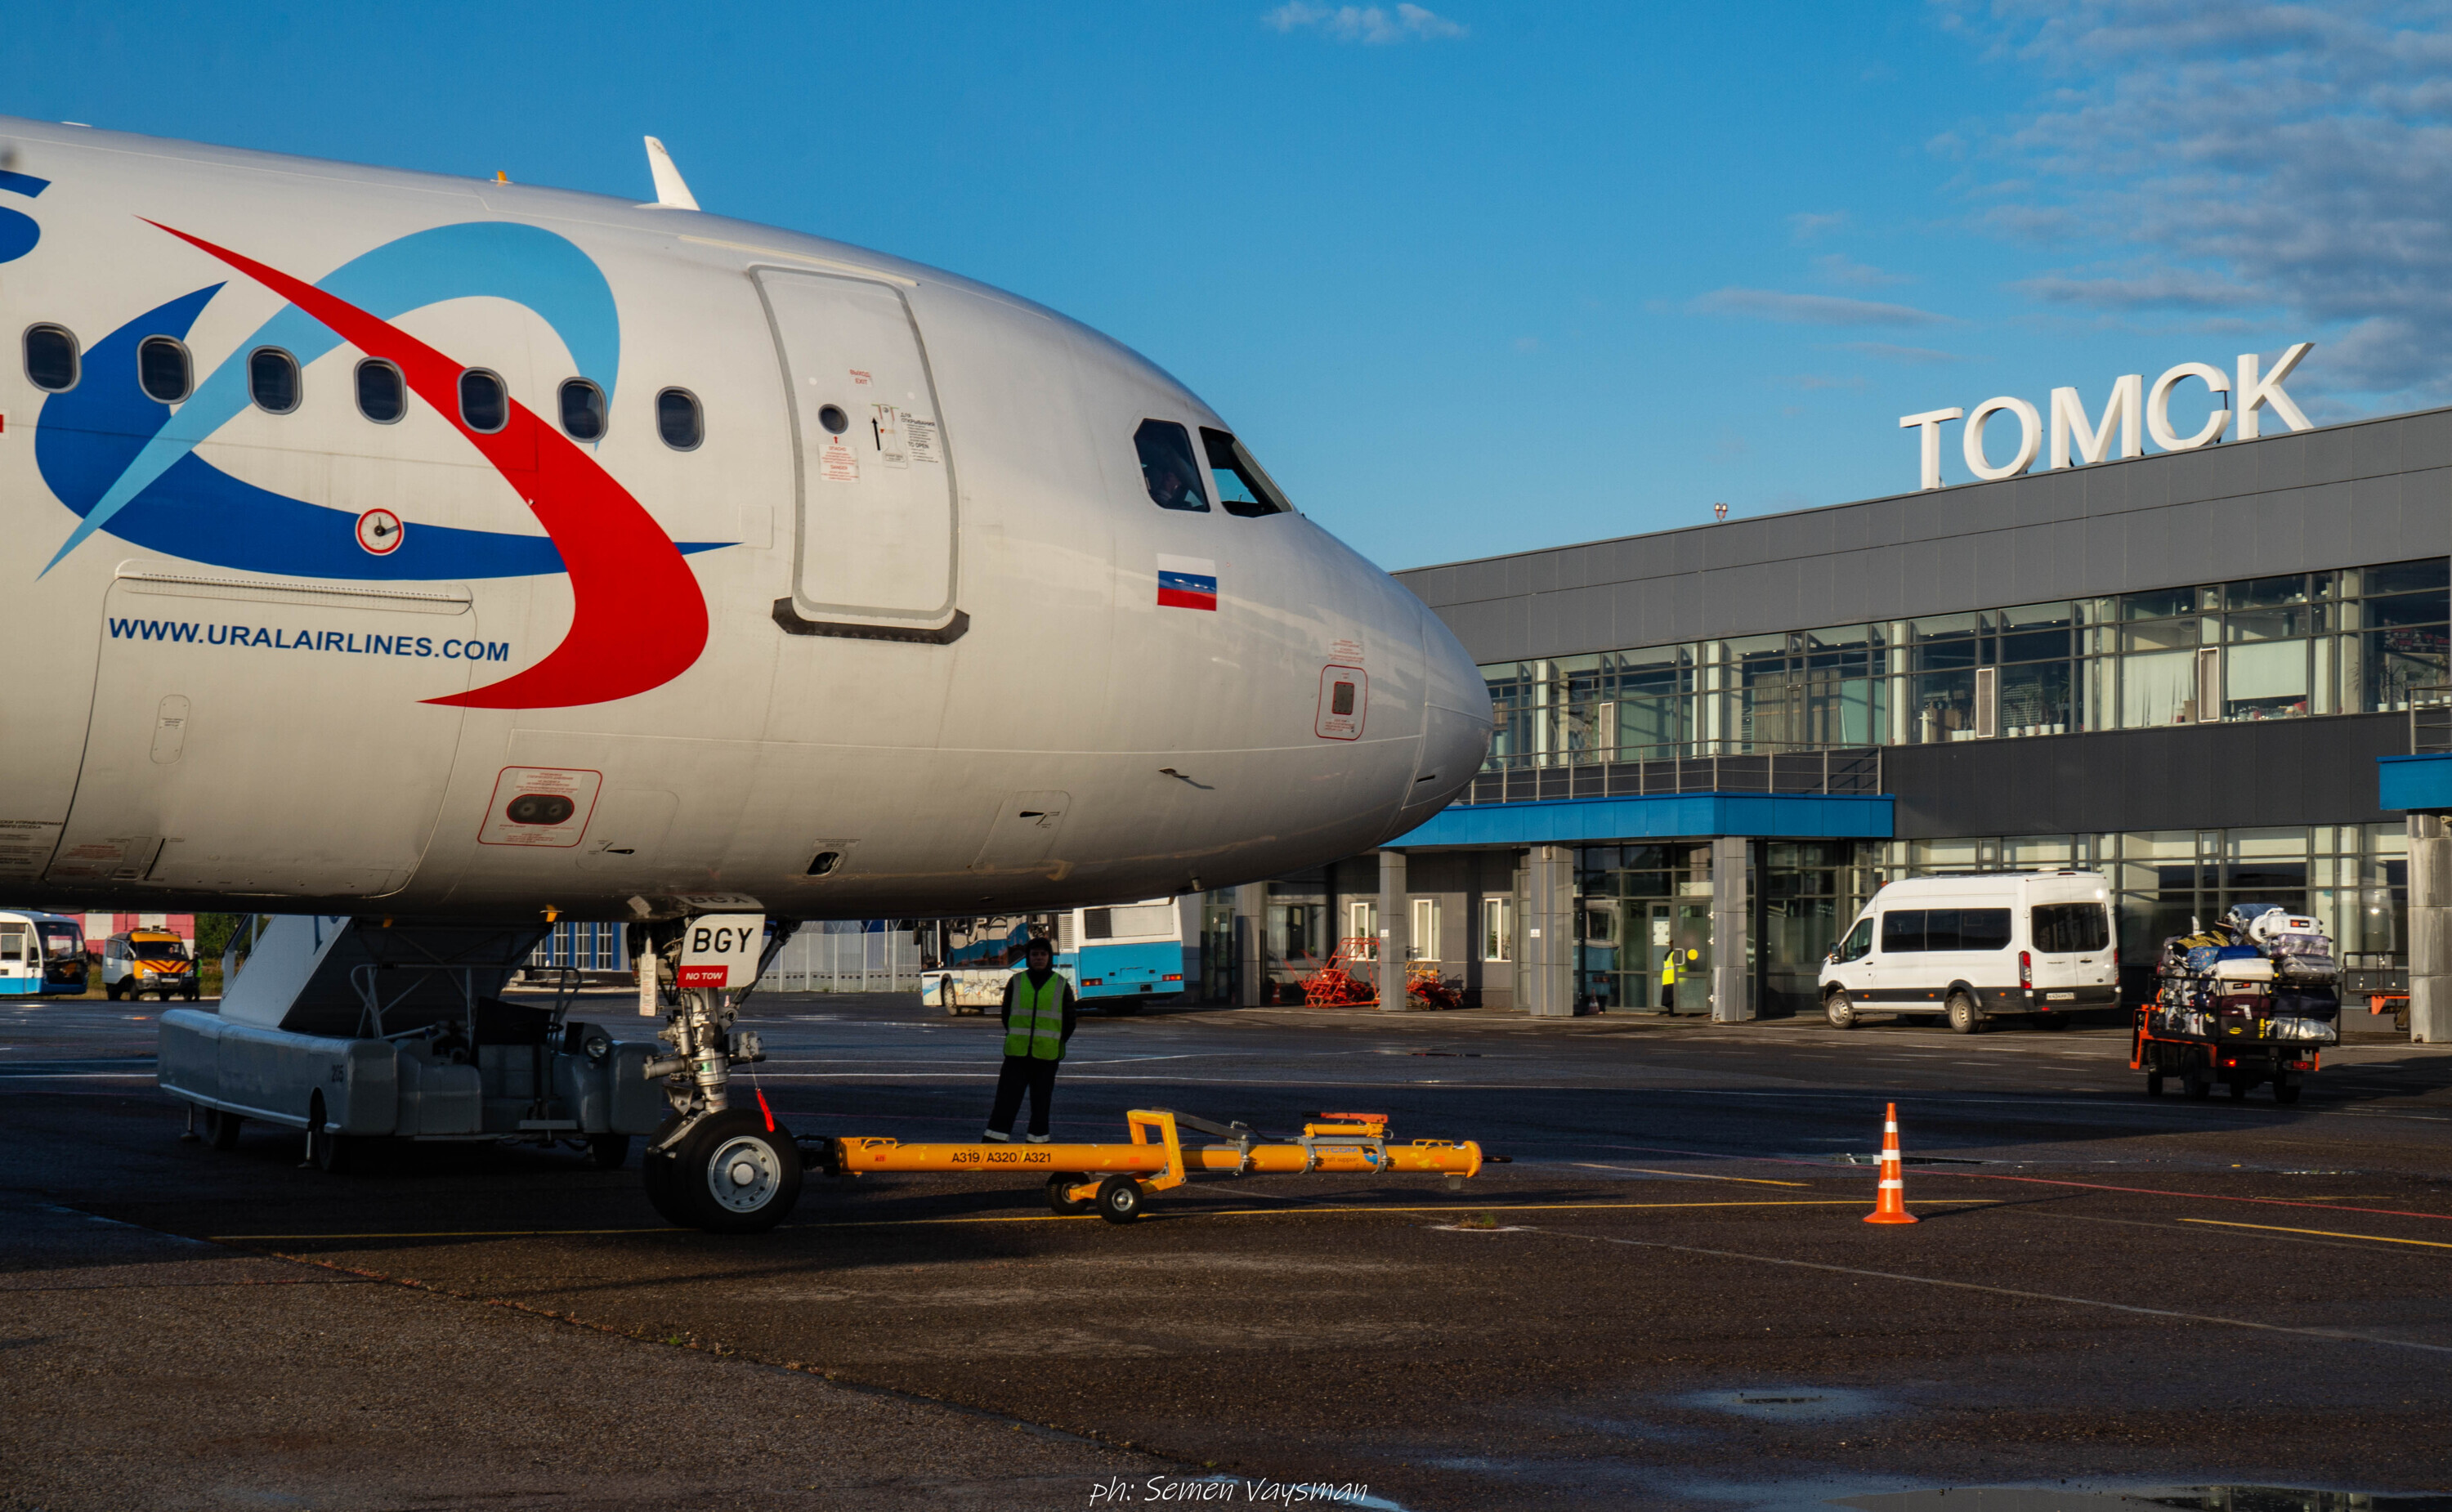 Аэропорт Томска (TOF) — как добраться, онлайн-табло, отзывы